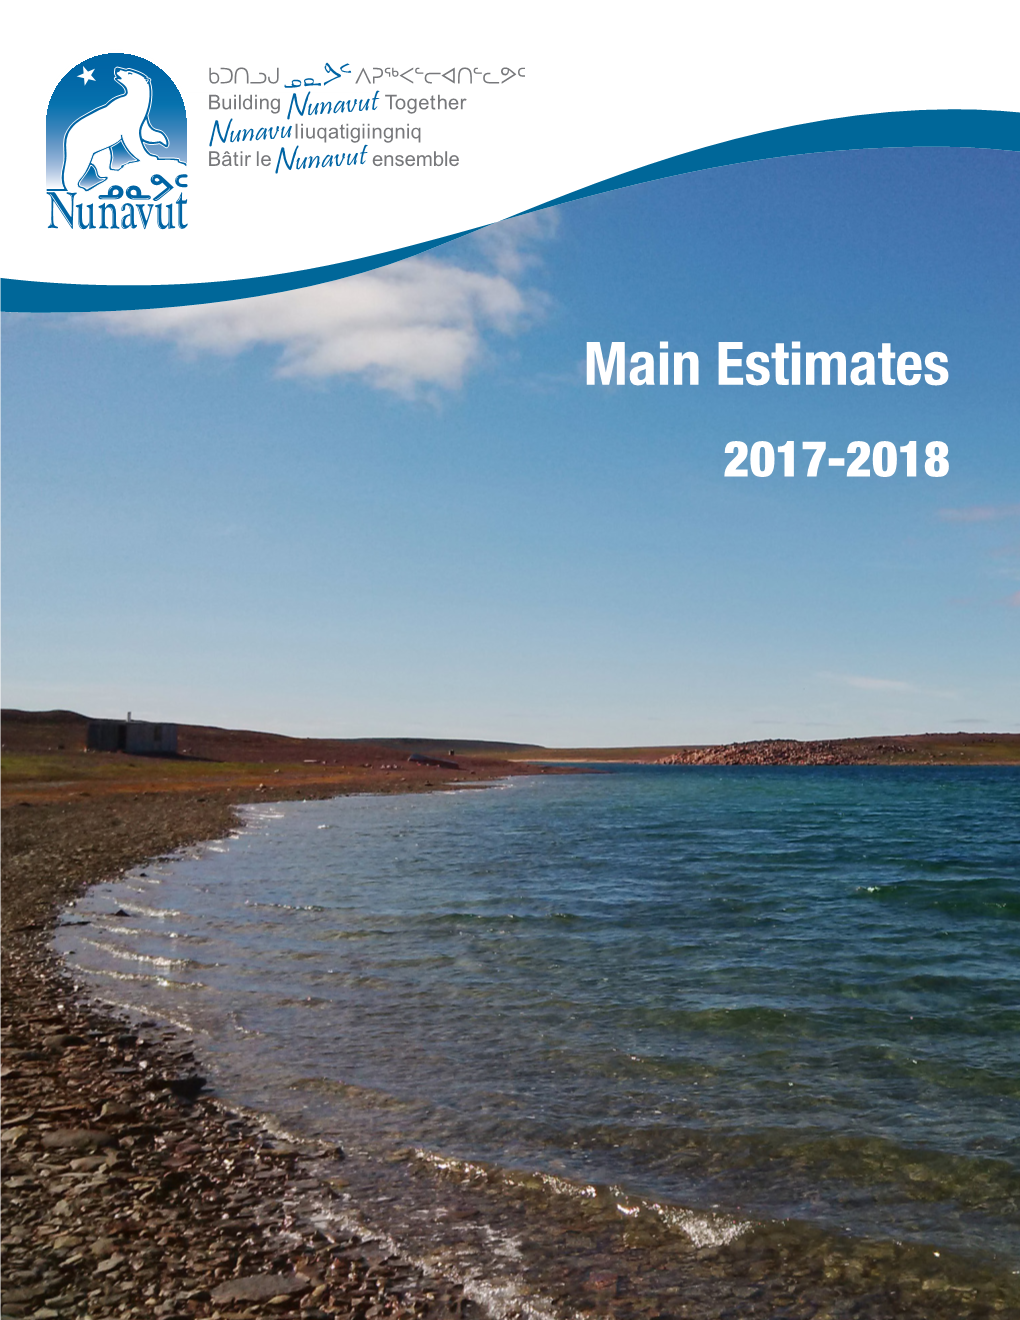 Main Estimates 2017-2018